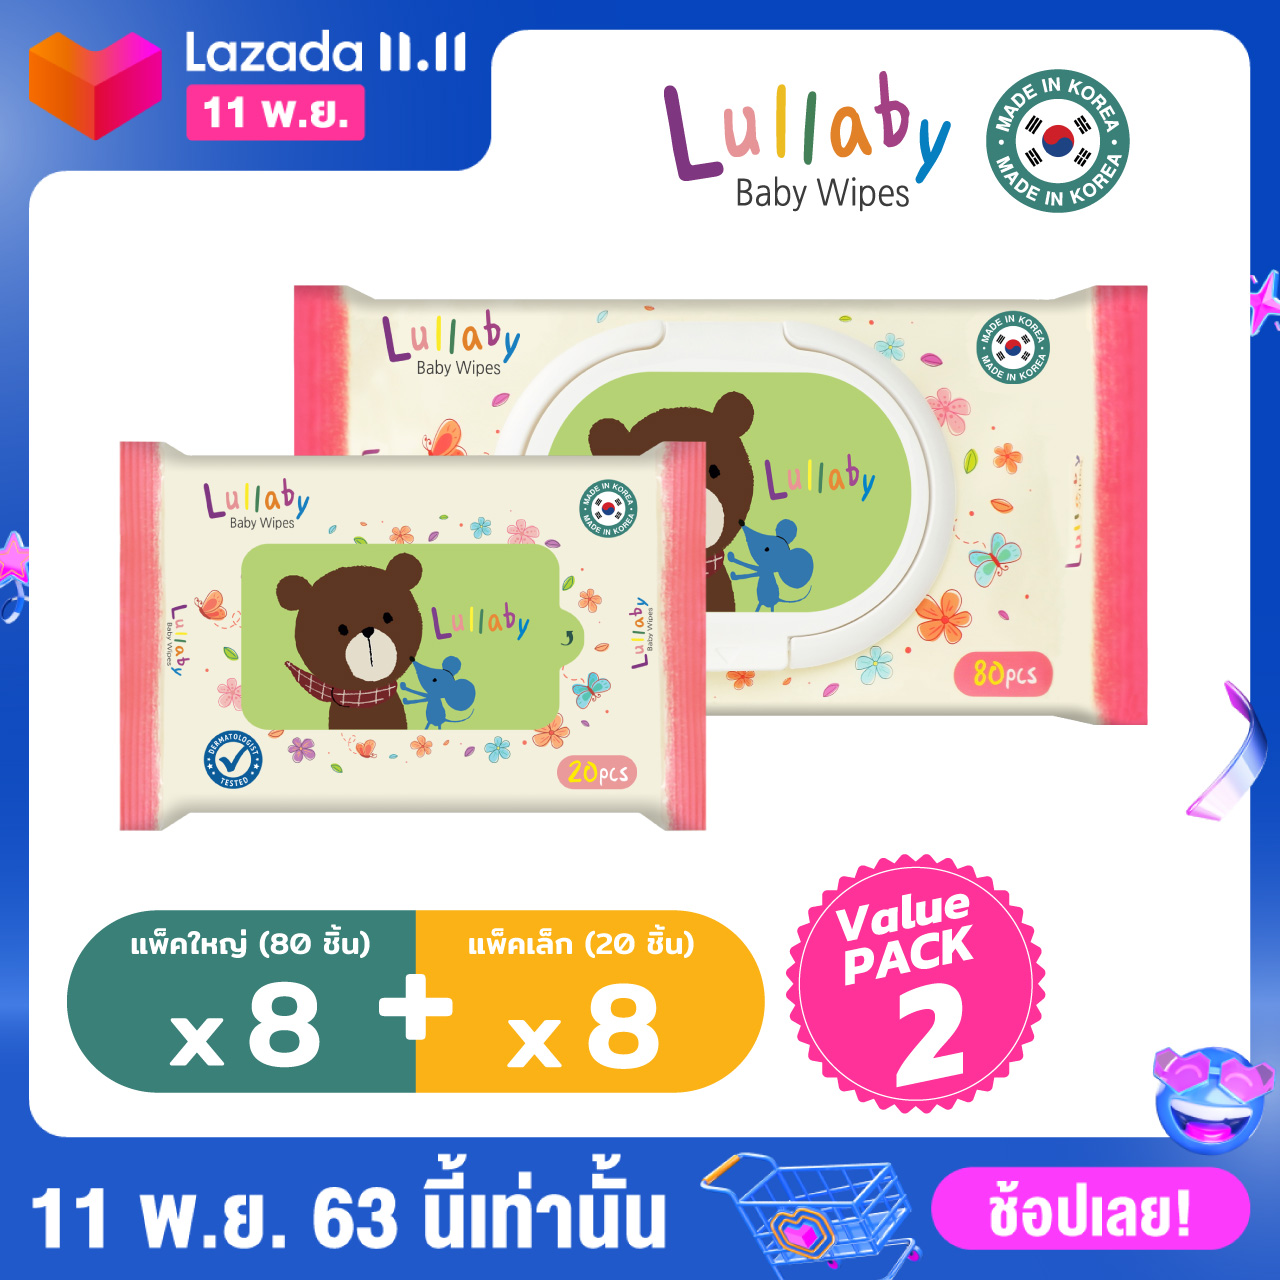 ซื้อที่ไหน Lullaby baby wipes ทิชชู่เปียกลัลลาบาย สูตรน้ำแร่จากฝรั่งเศส value pack 2ไซส์ใหญ่ 80 *8 แพ็ค+ 20 แผ่น*8แพ็ค